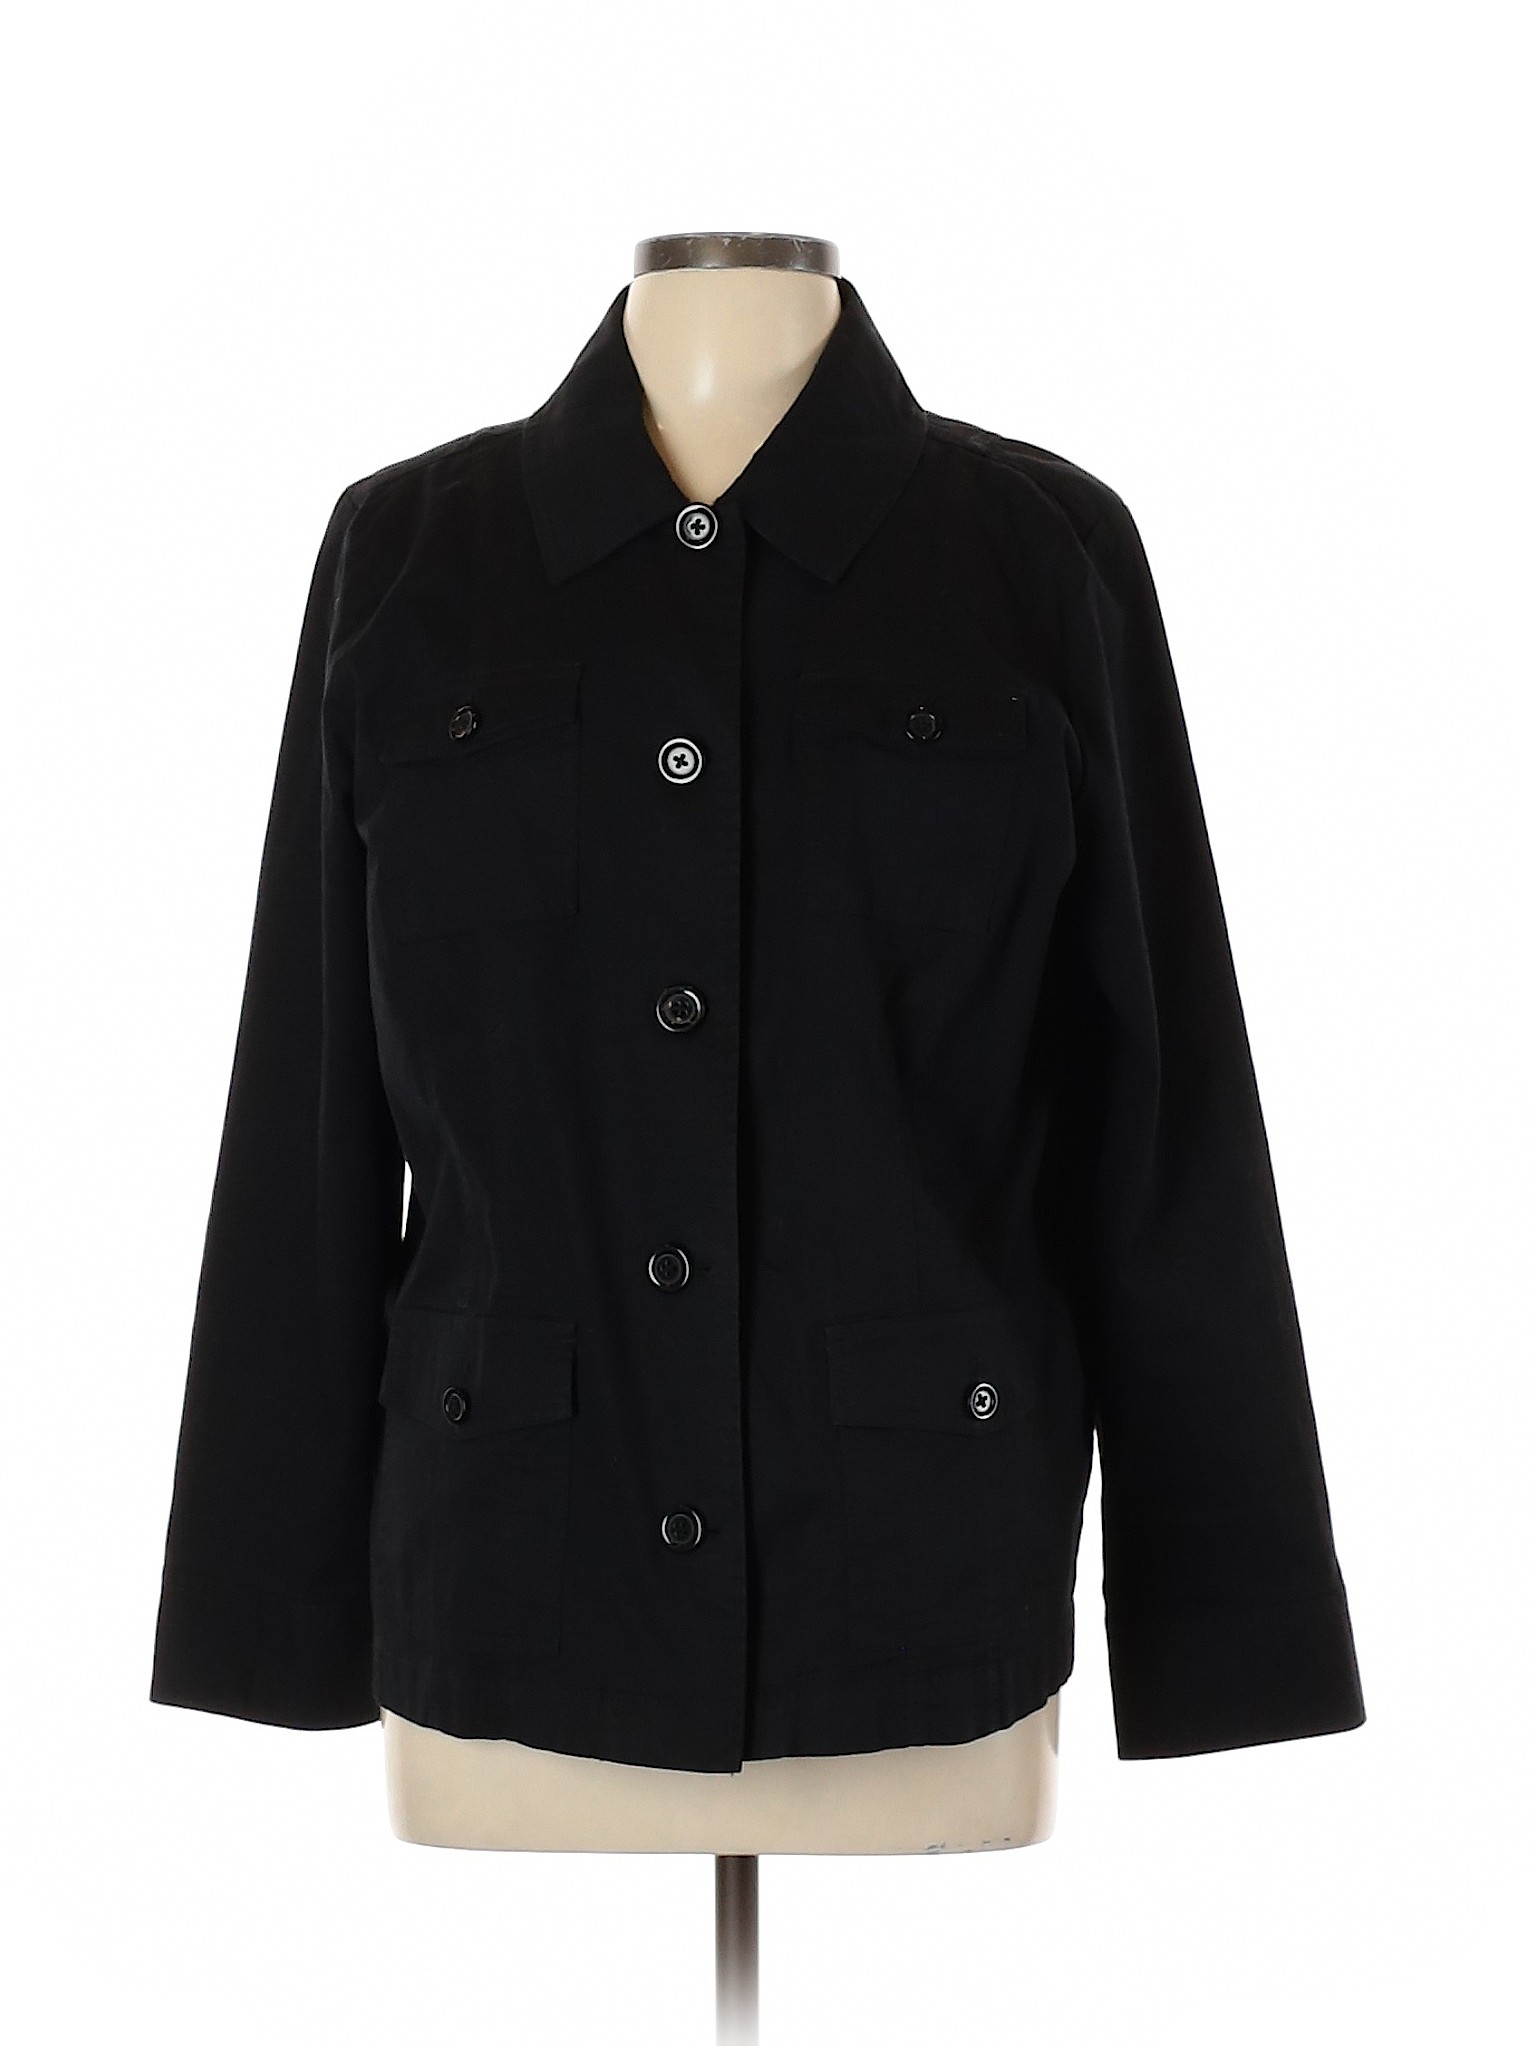 Croft & Barrow Women Black Jacket L | eBay